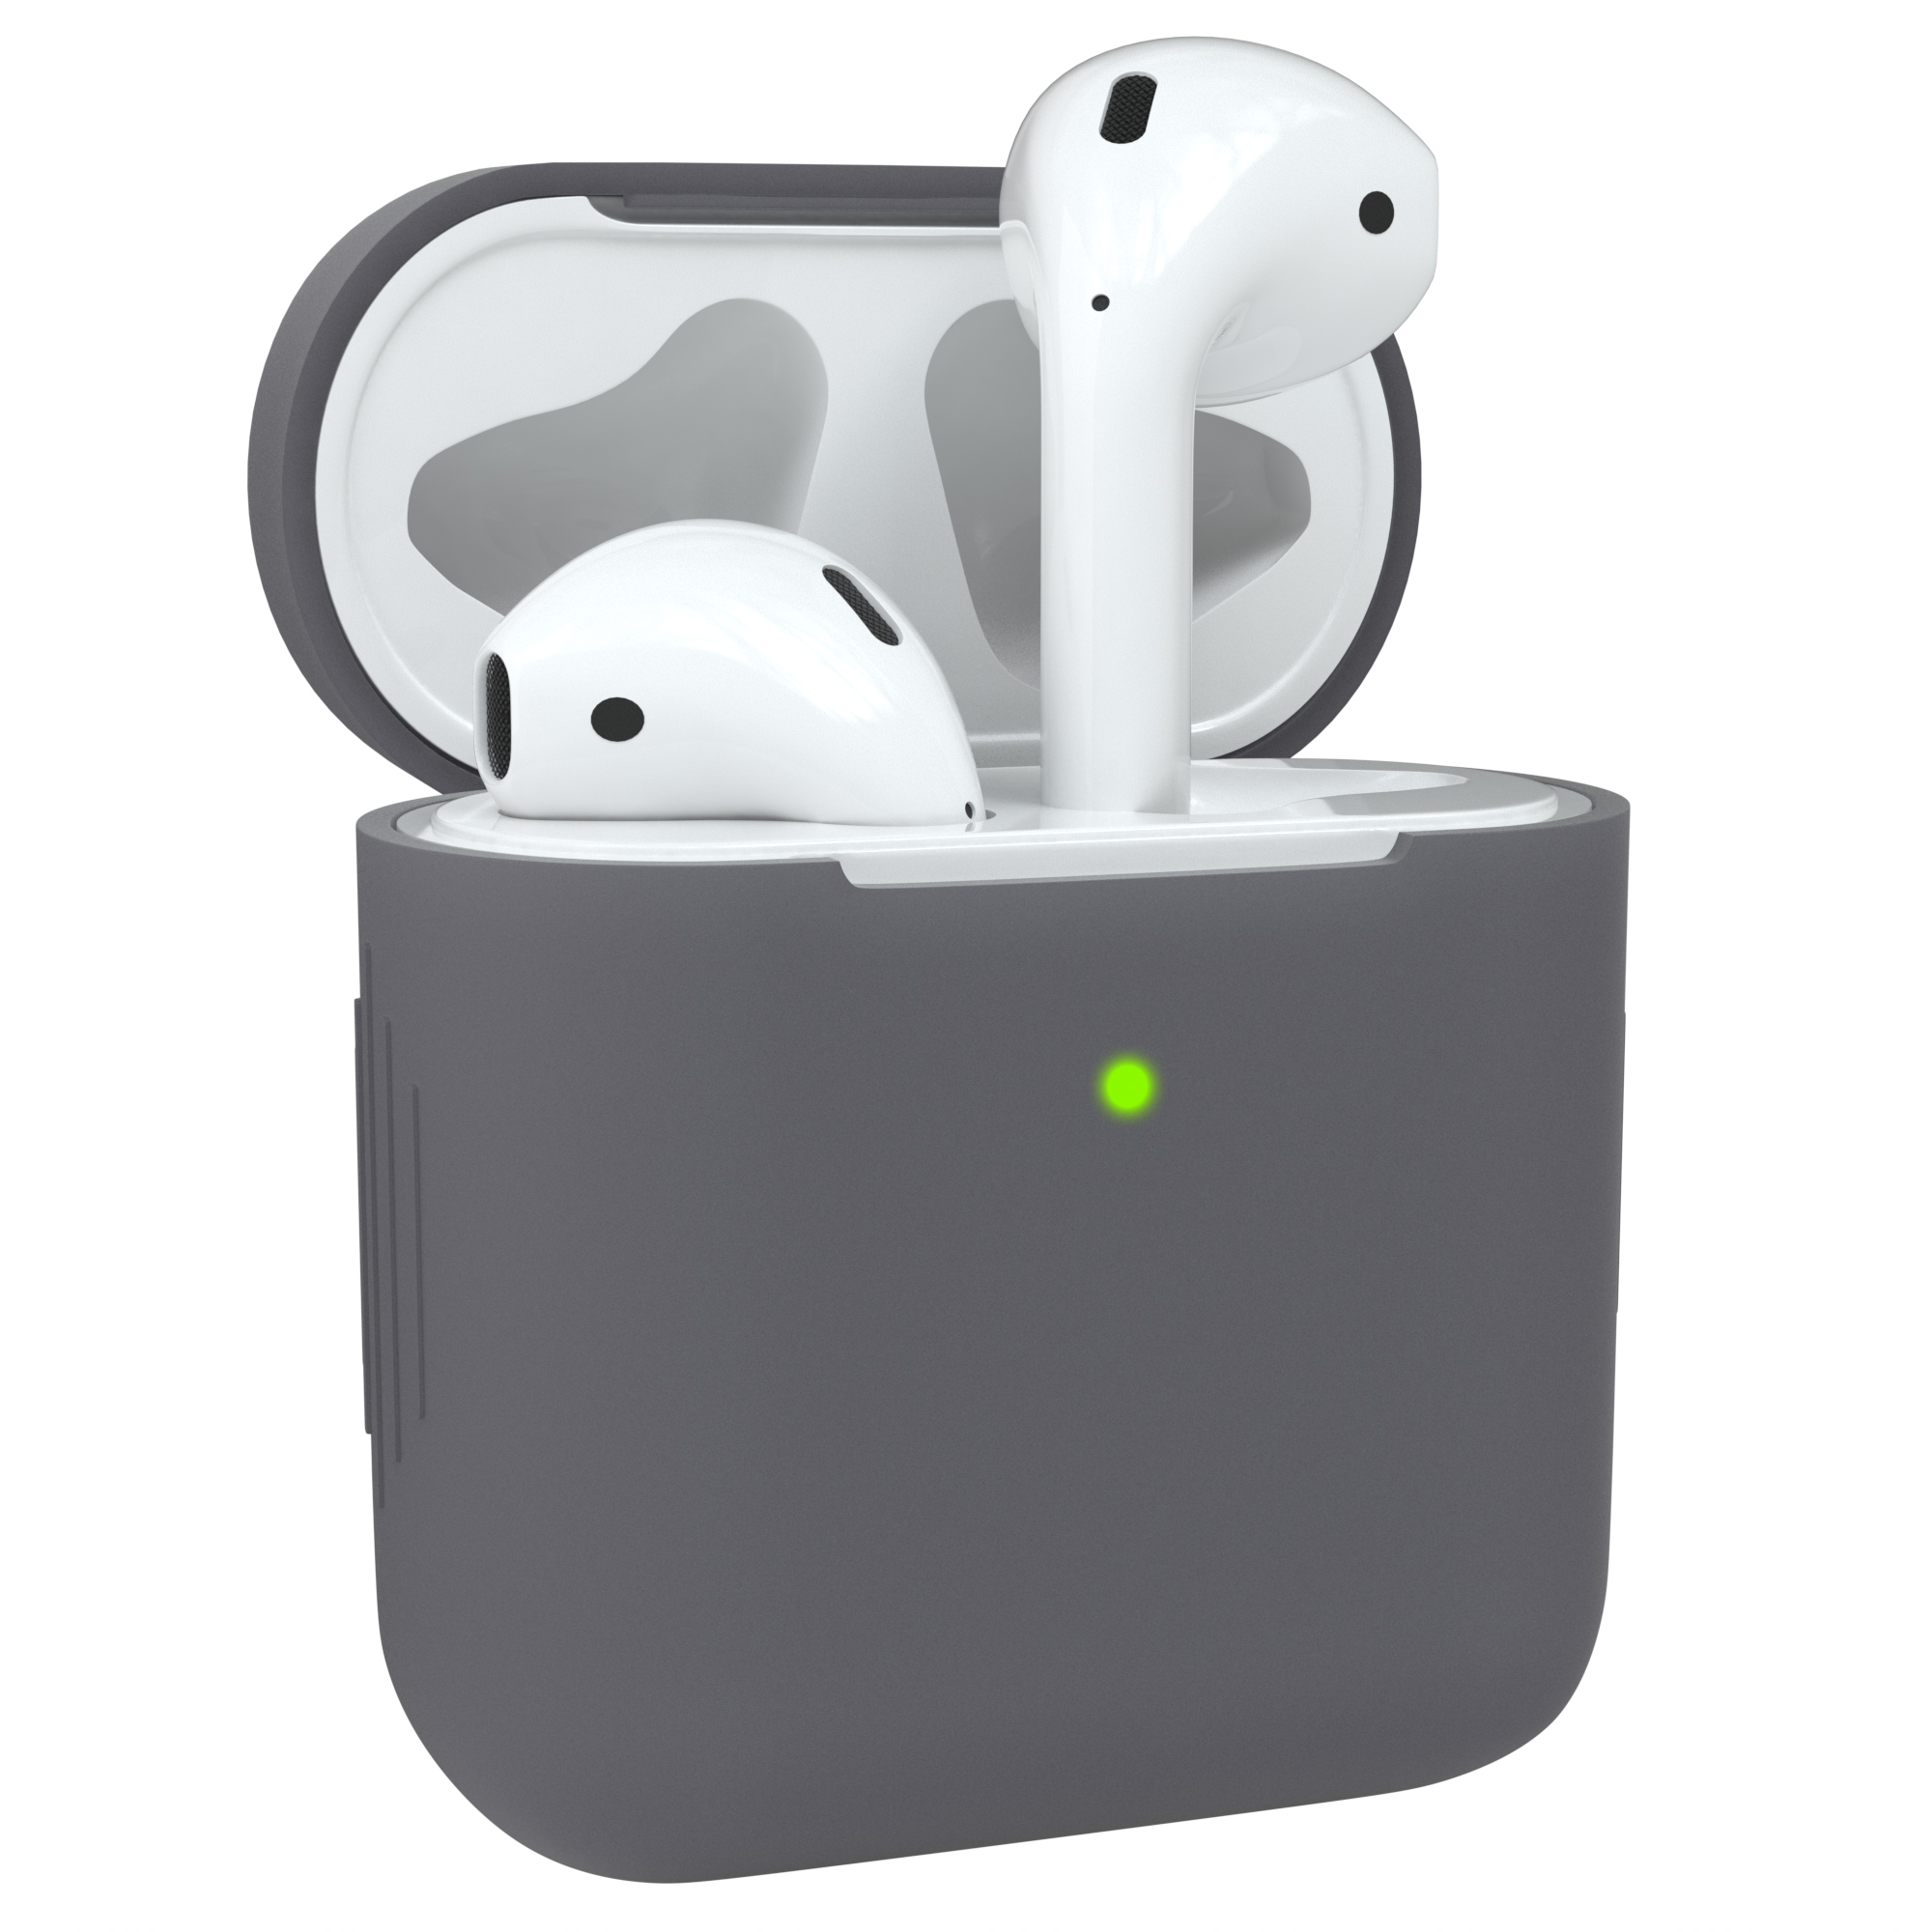 EAZY CASE AirPods Silikon Case Sleeve Anthrazit Grau passend für: Schutzhülle Apple